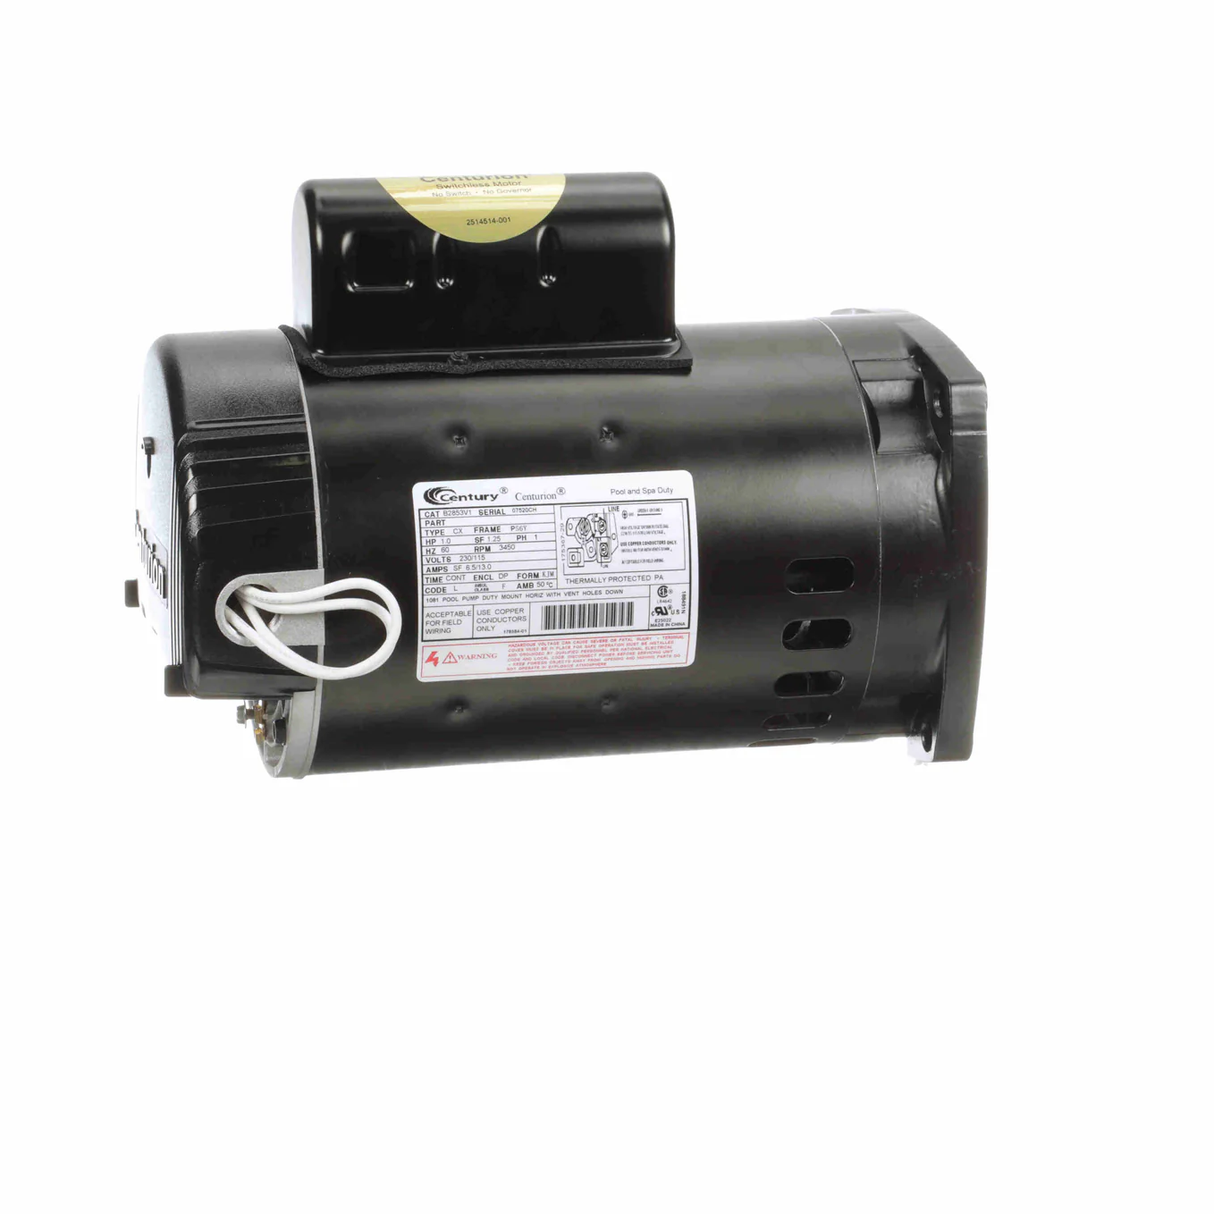 Century B2853 PSC (Permanent Split Capacitor) 6-1/2" Diameter Pool & Spa Pump Motor